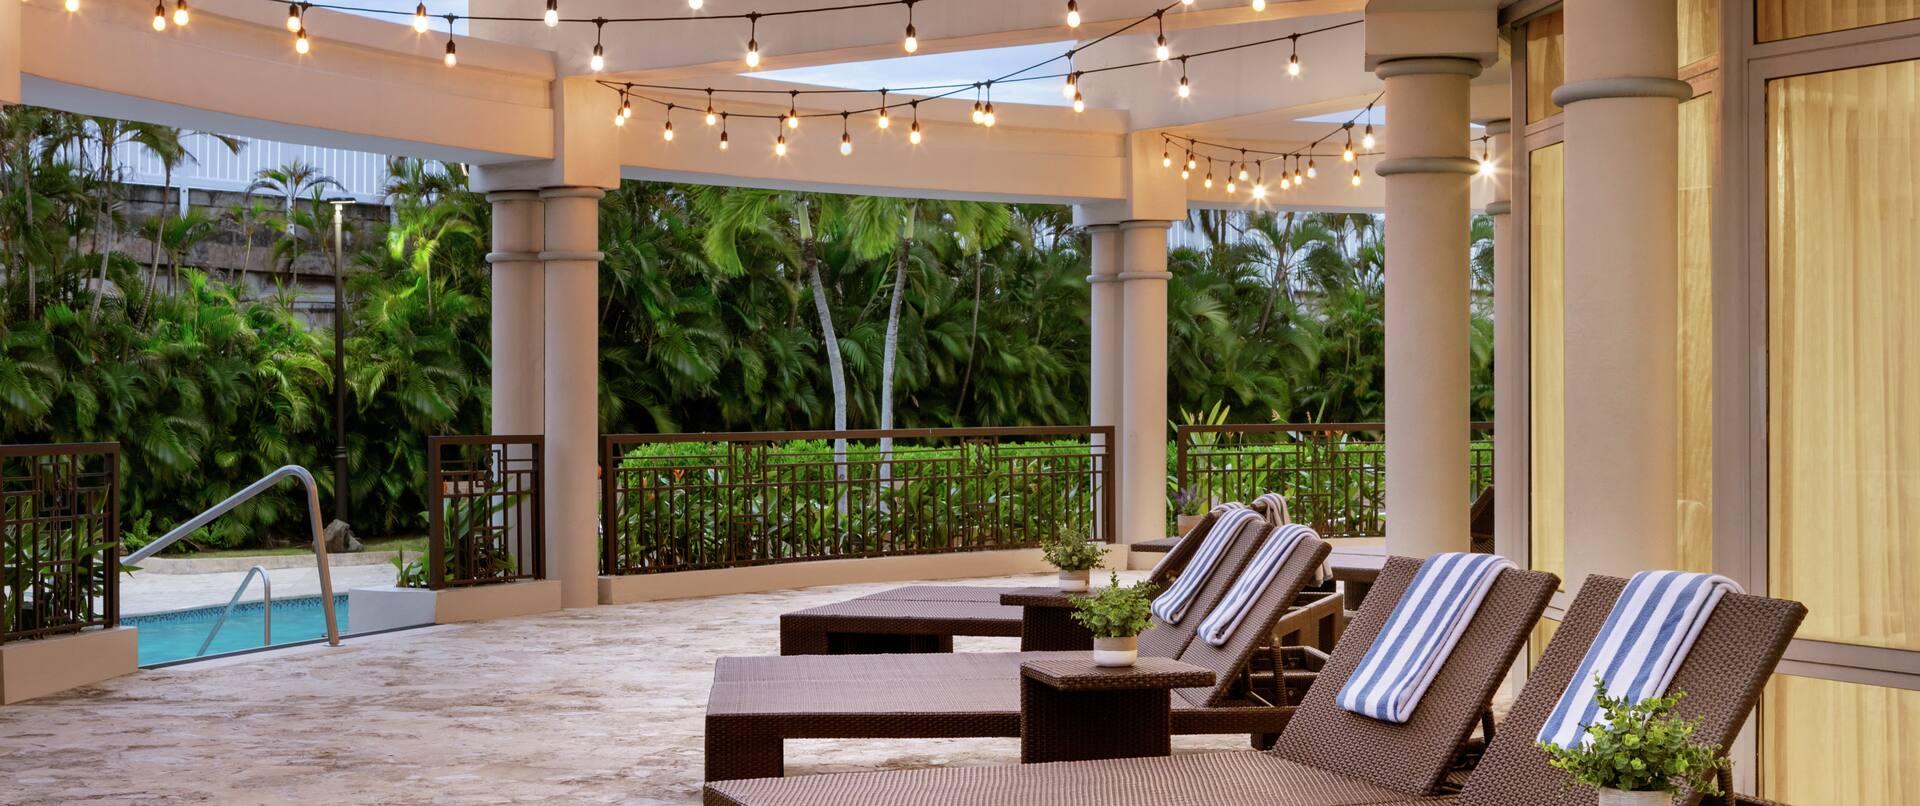 Spacieuse terrasse de la piscine La Vista avec des chaises longues, des serviettes et des lumières suspendues.